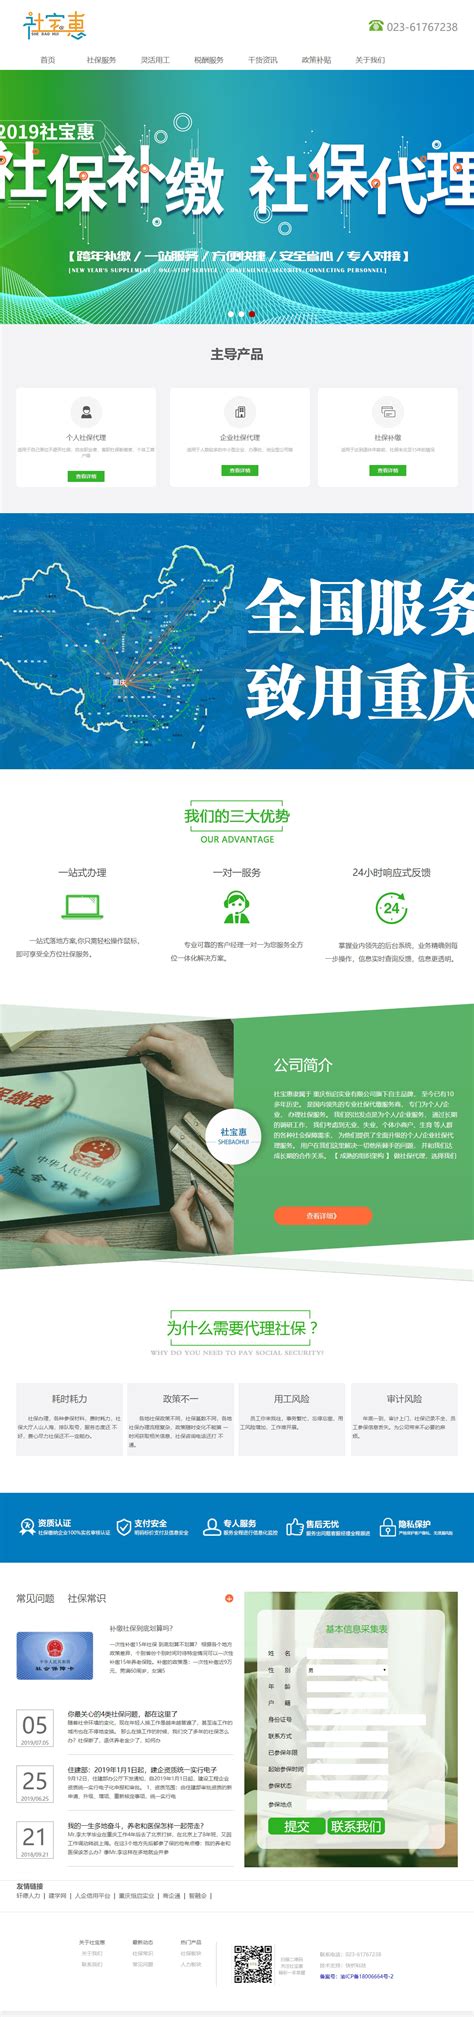 重庆网络营销网站设计报价